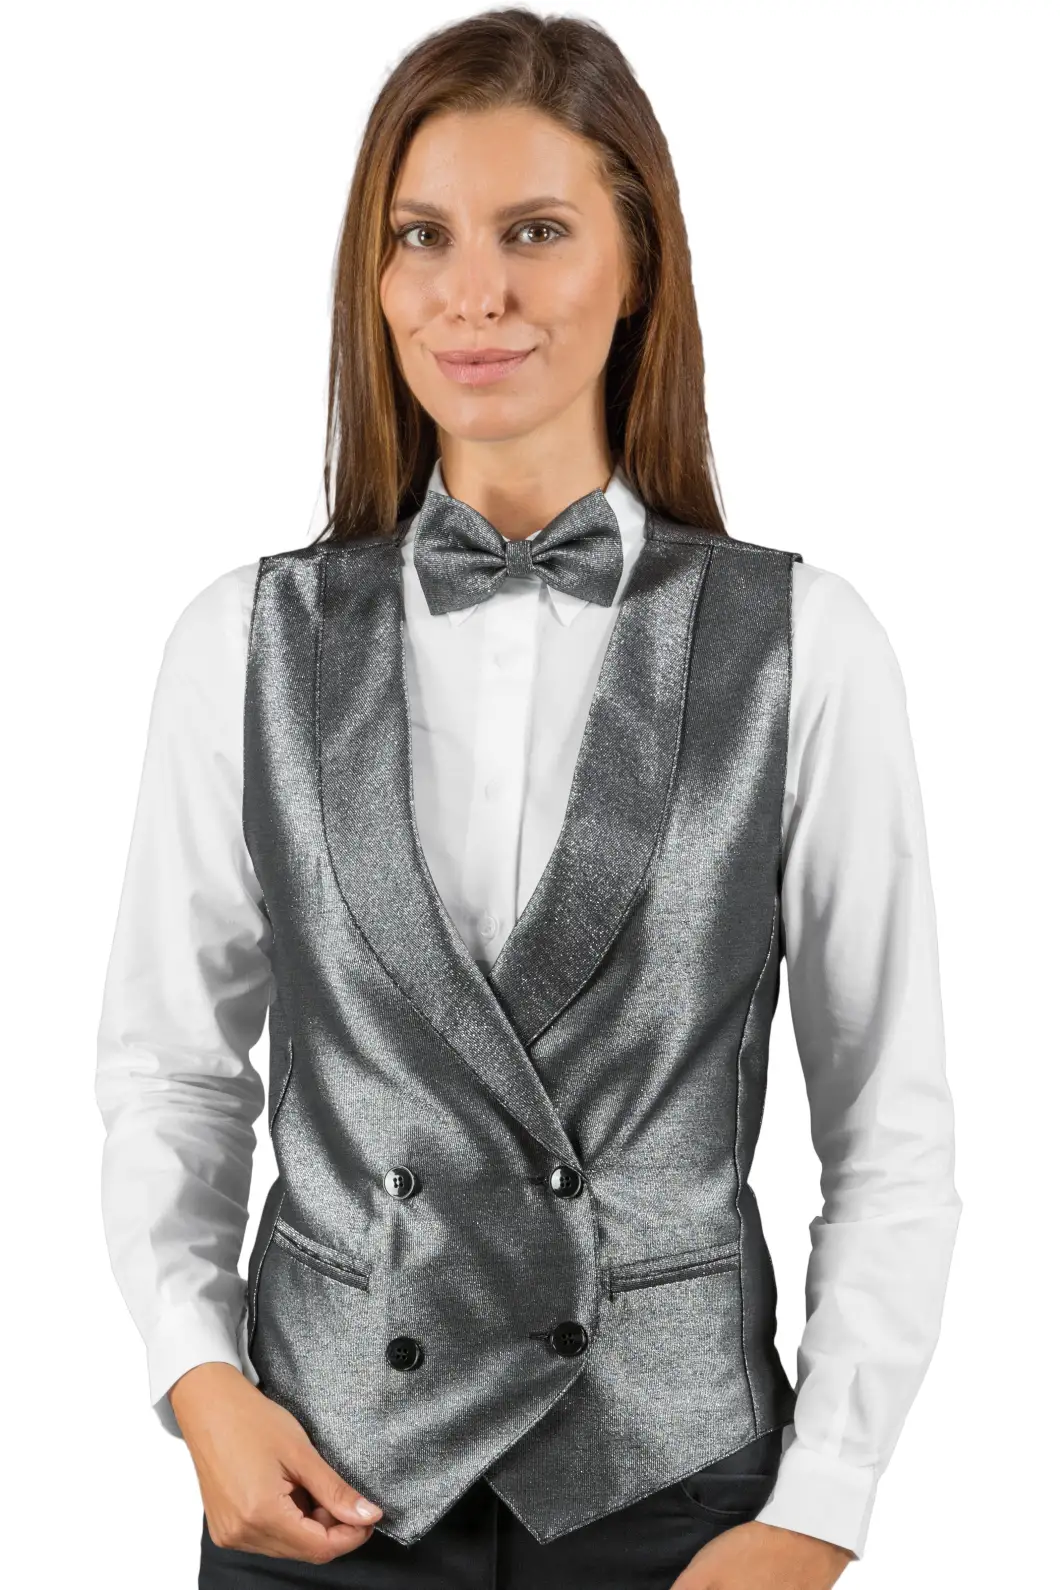 Gilet Donna in Lurex Silver per Settore Alberghiero Personalizzato - Isacco